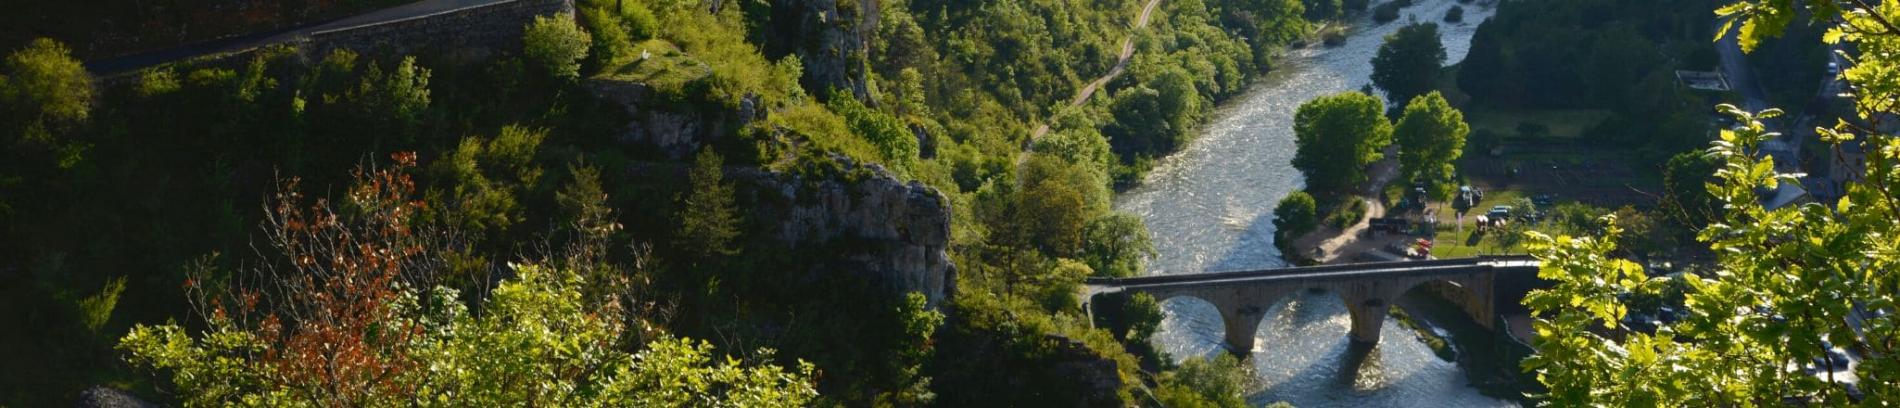 Slide Vue aériene du pont du Gard